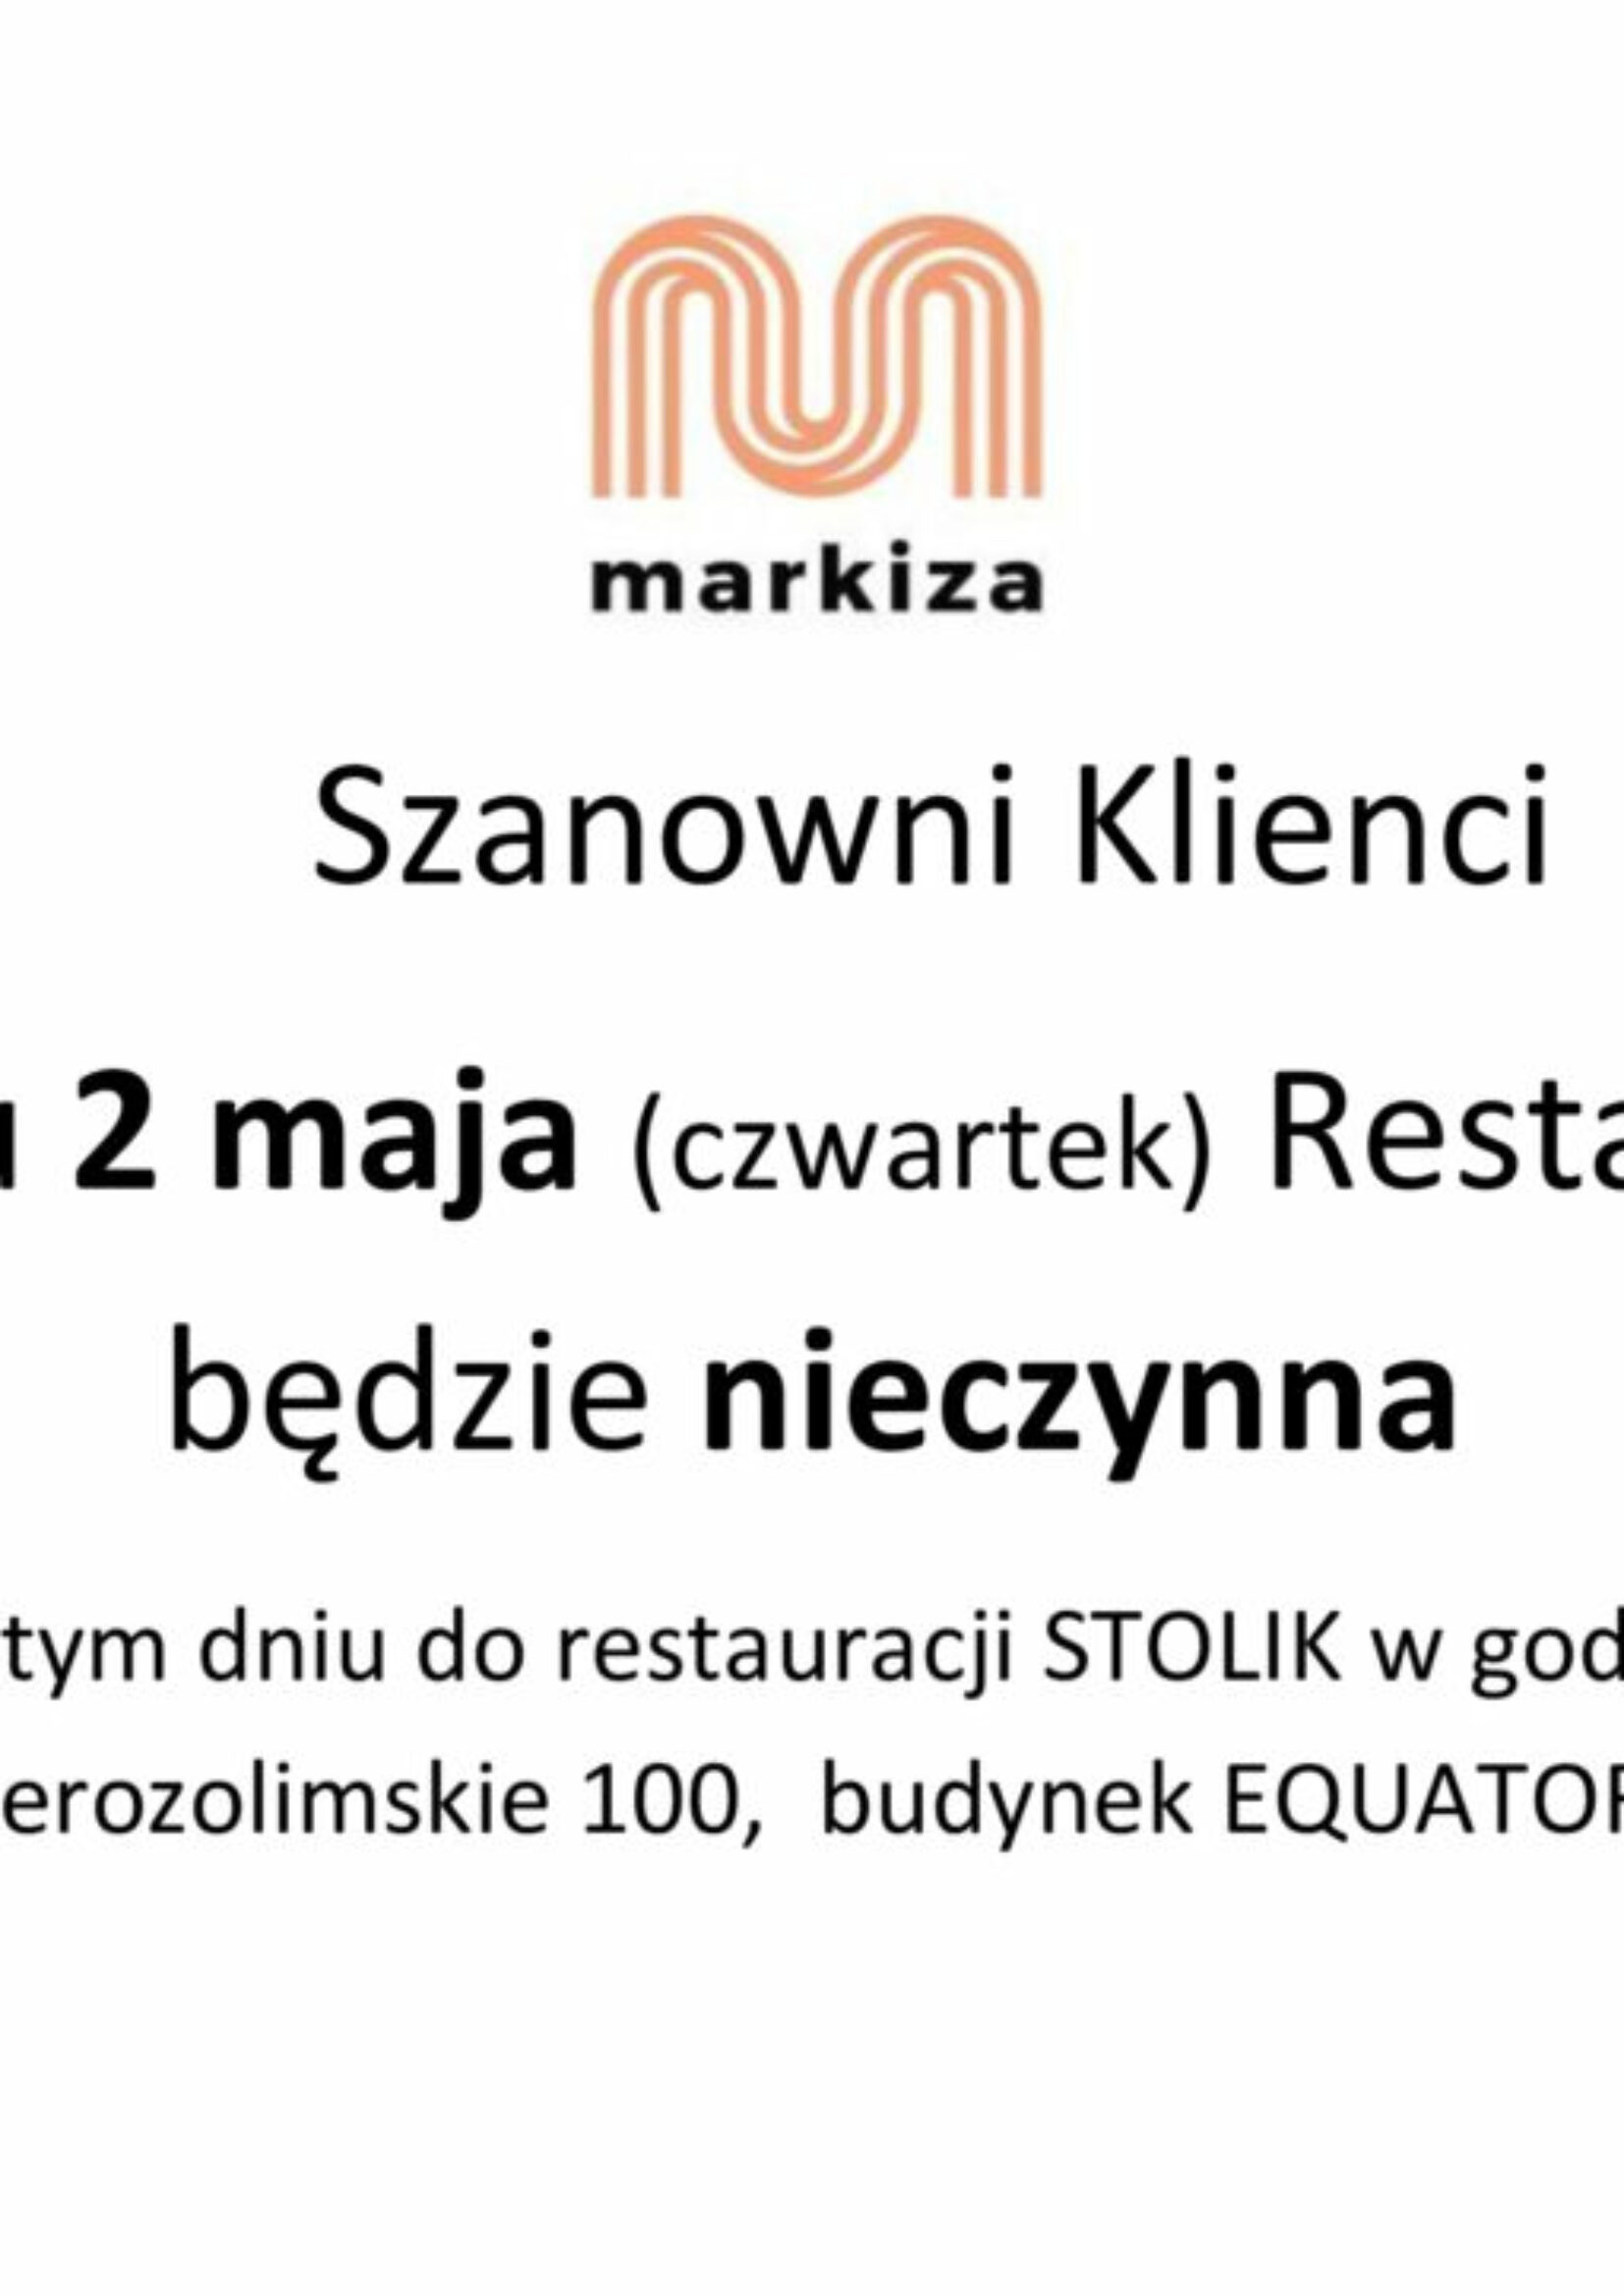 restauracja-nieczynna-_drzwi-Markiza_-2-maja